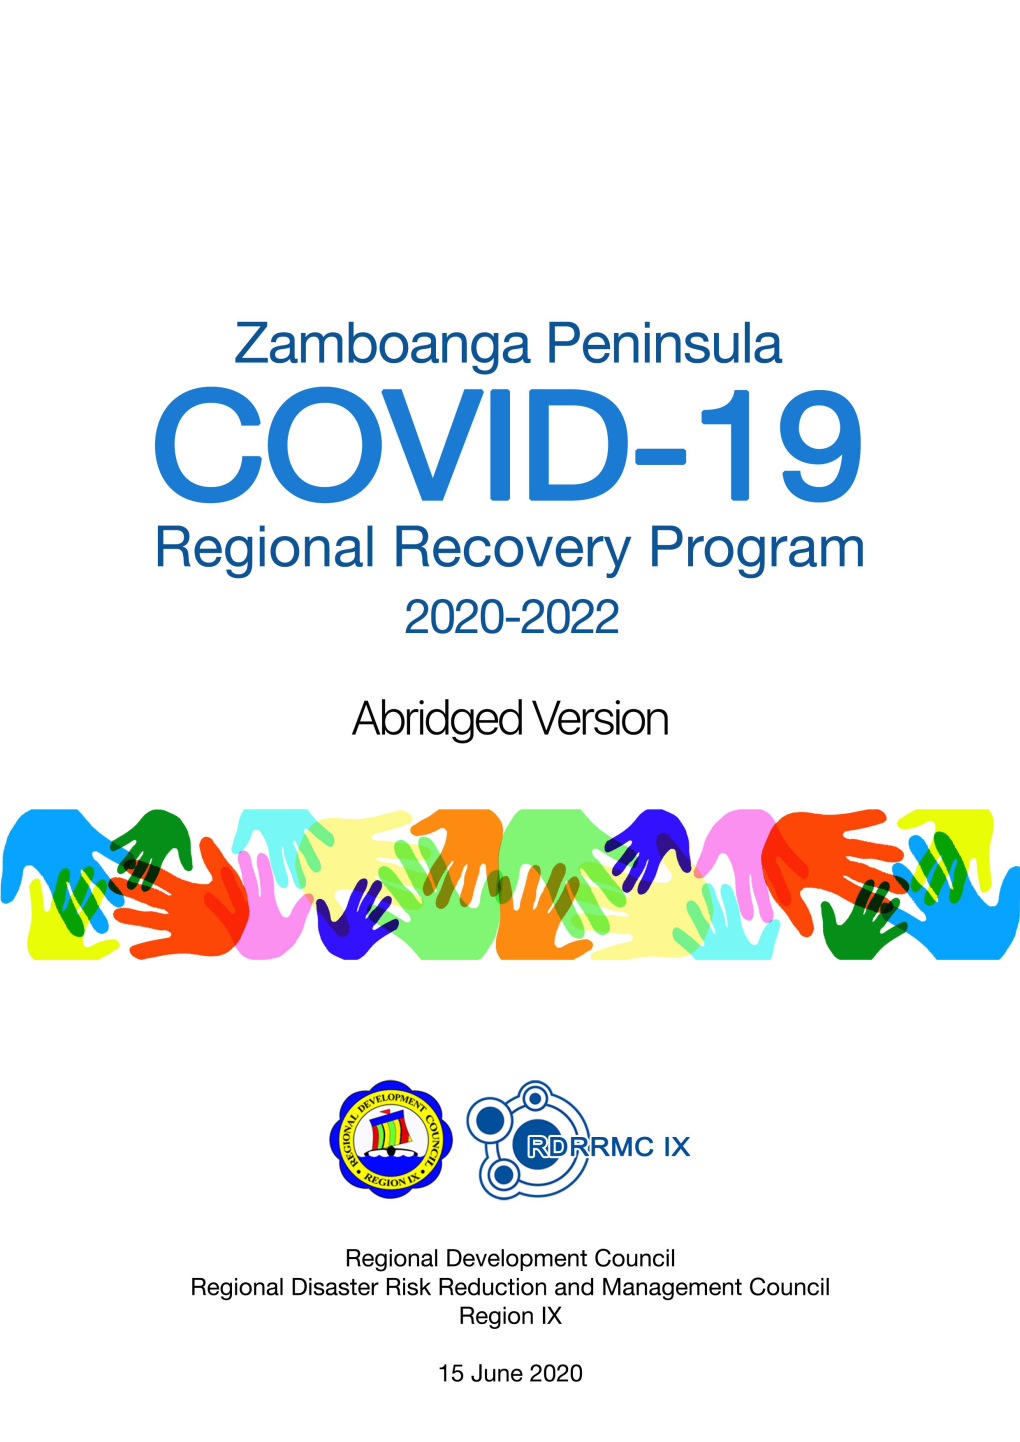 Zamboanga Peninsula Regional Recovery Program Abridged Version